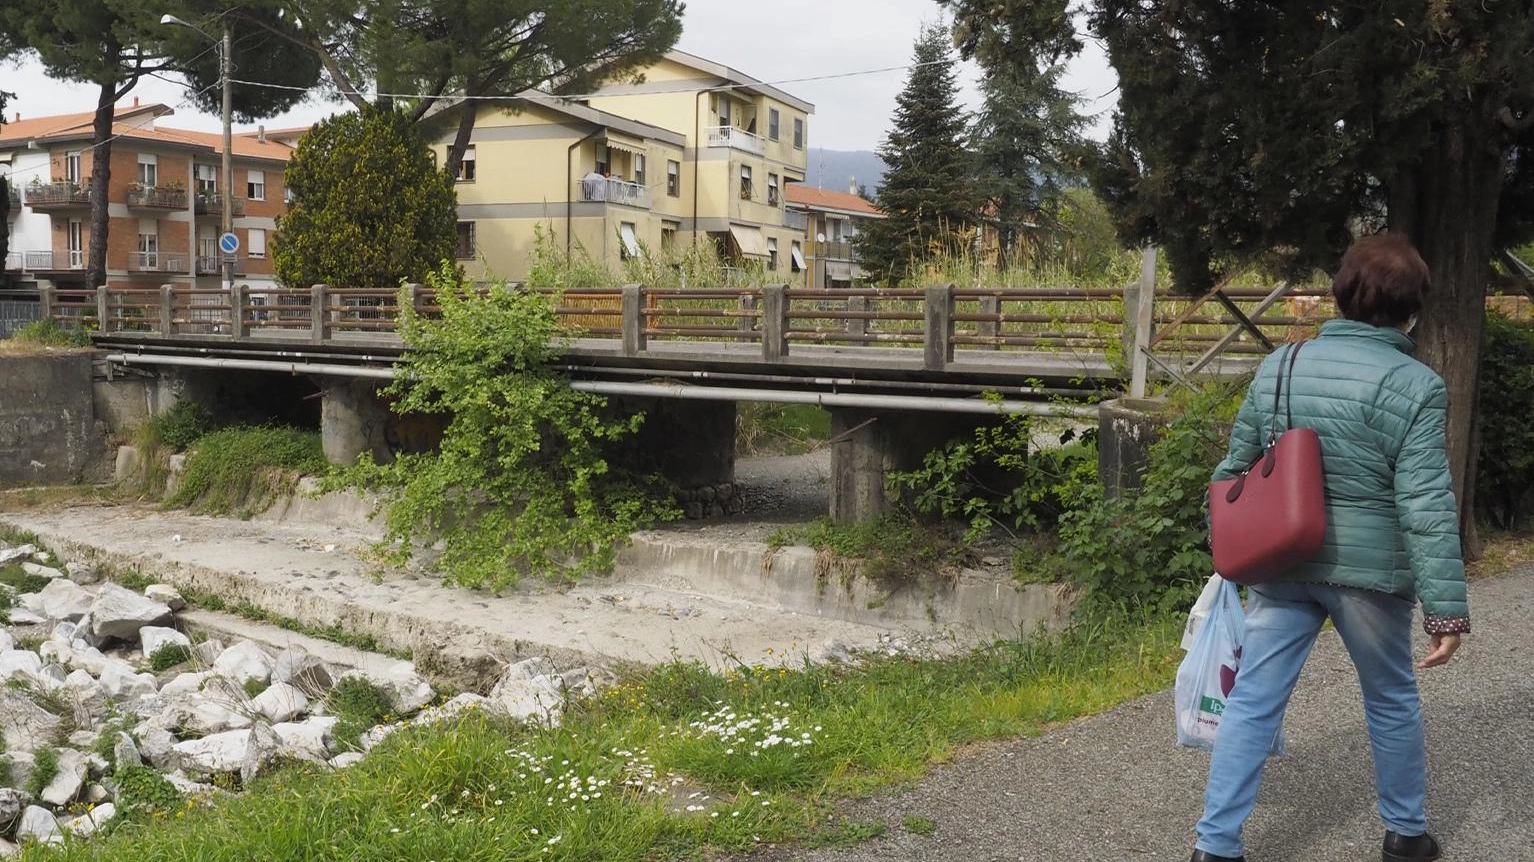 L’assessore “all’acqua”  Massimo Sertori:  "Va gestita al meglio  con scelte condivise"